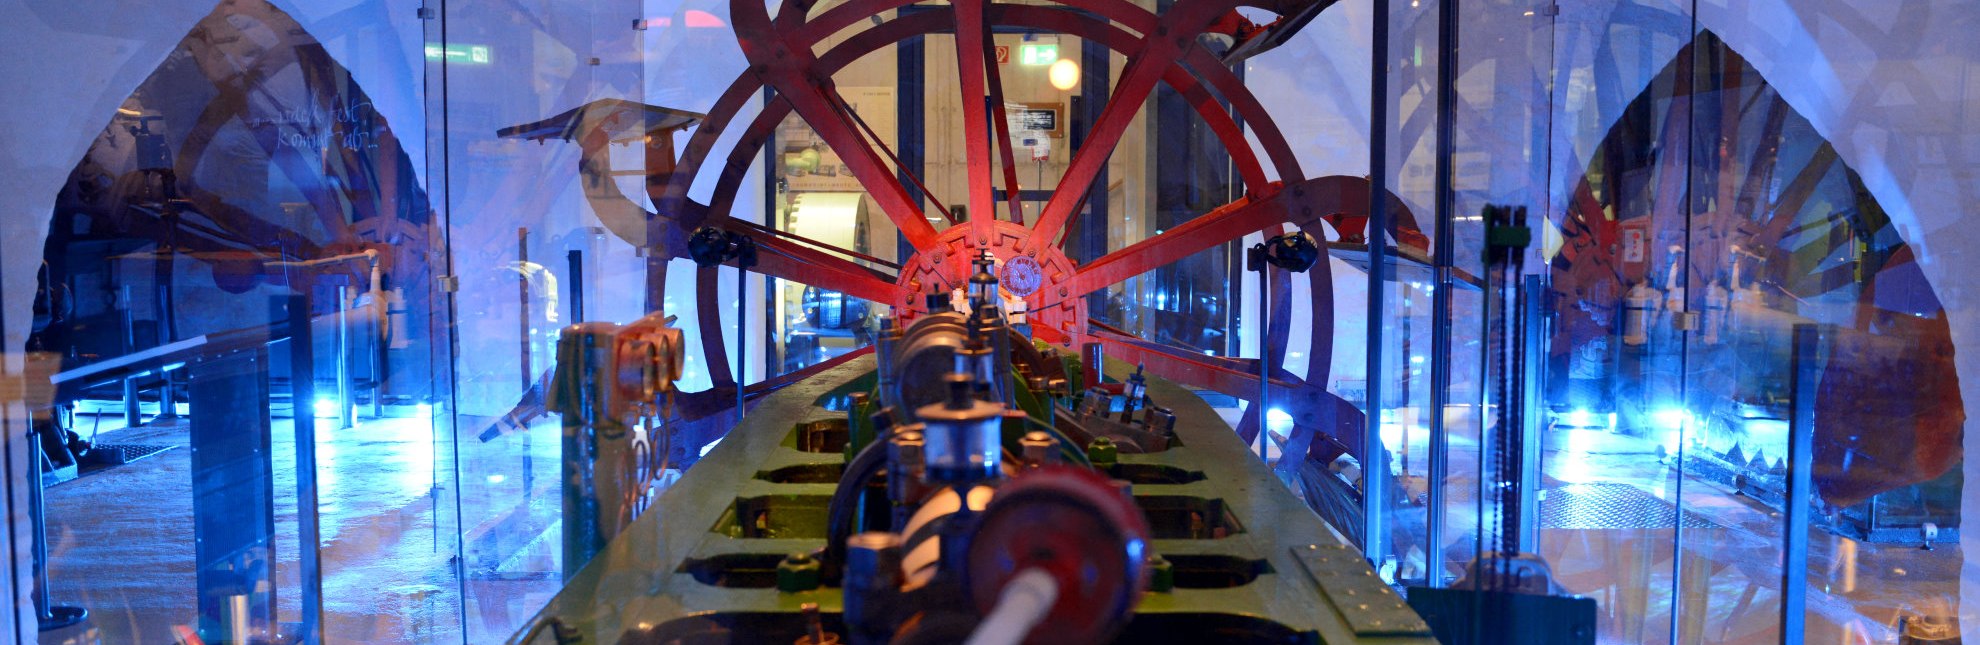 Das Schaufelrad in der Schatzkammer der Schiffsamtriebe des Elbschifffahrtsmuseums, © Uwe Franzen